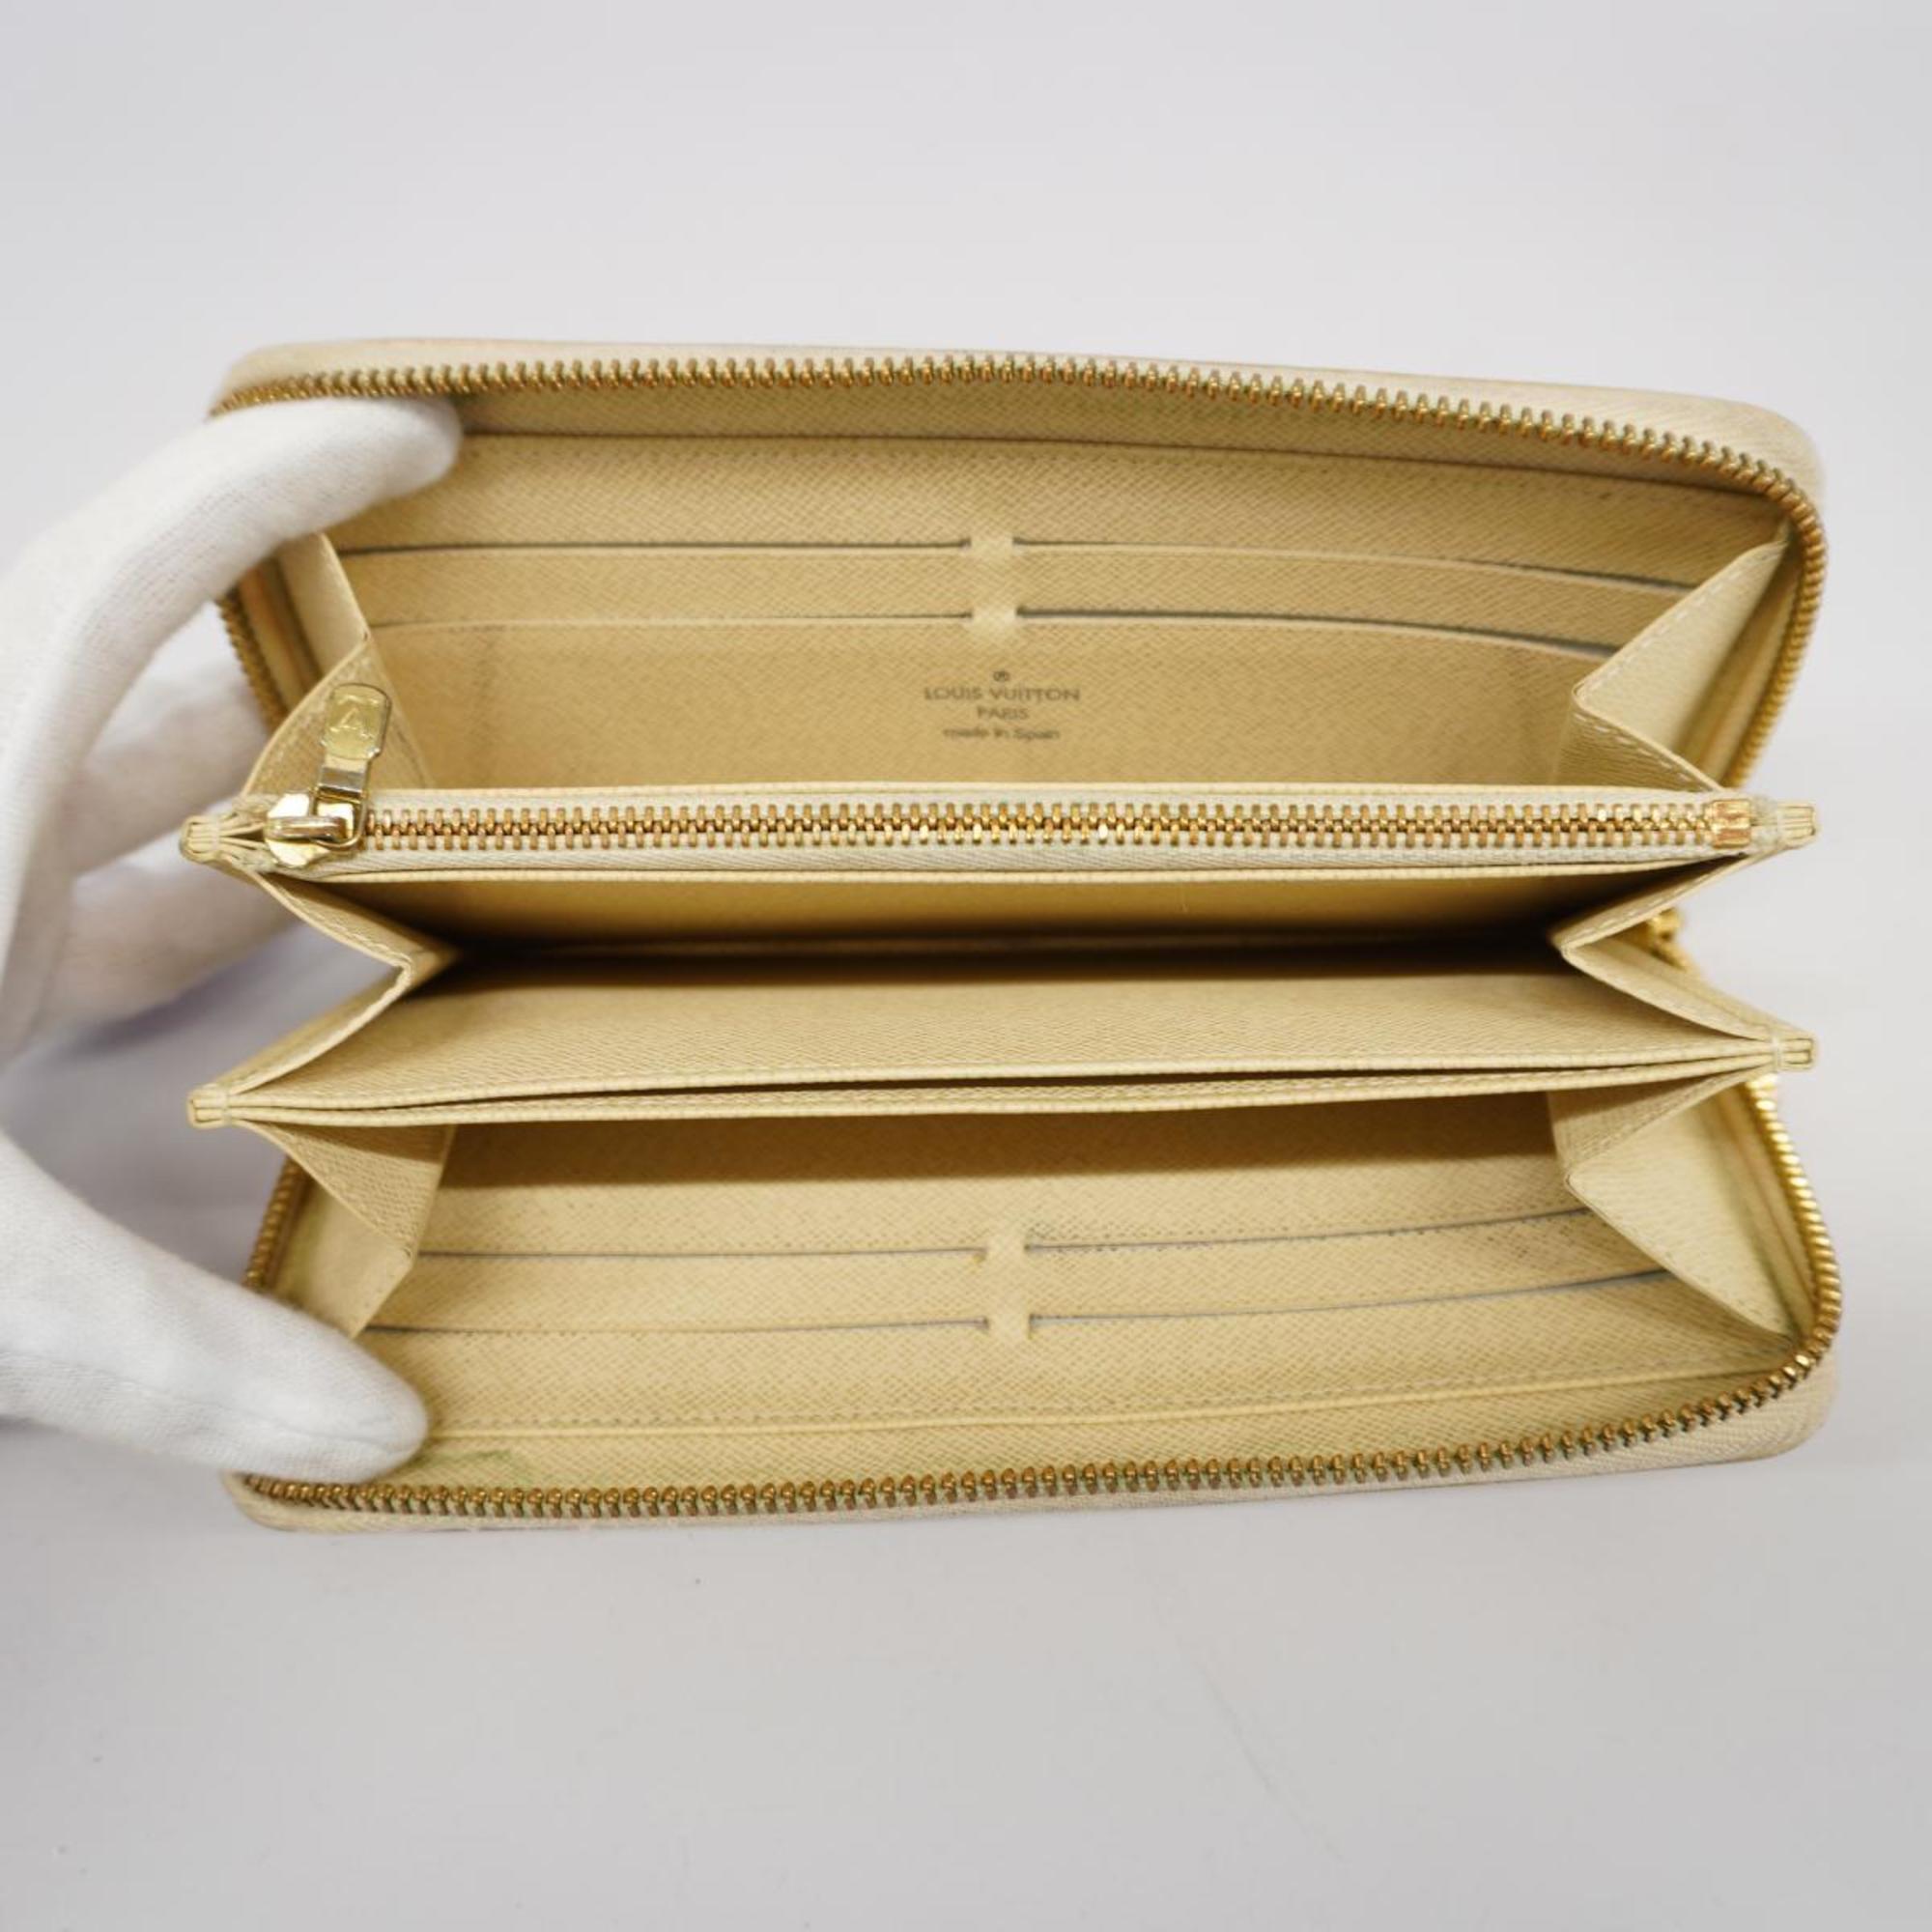 ルイ・ヴィトン(Louis Vuitton) ルイ・ヴィトン 長財布 ダミエ・アズール ジッピーウォレット N60019 ホワイトレディース